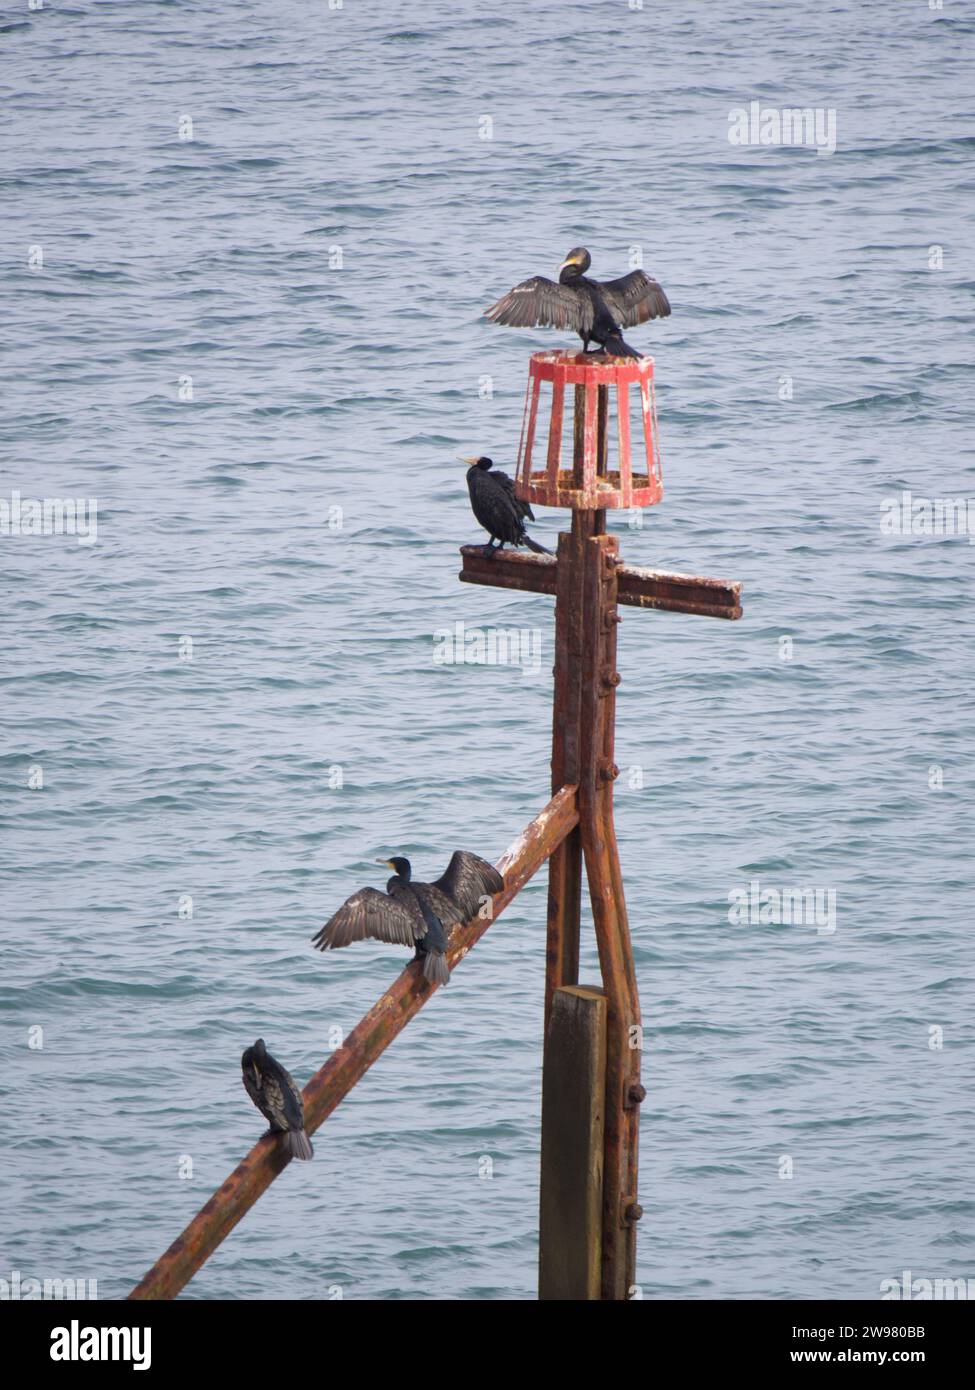 Eine Vogelschar, die auf einem Holzpfosten am Meer in einer friedlichen Umgebung thront. Stockfoto